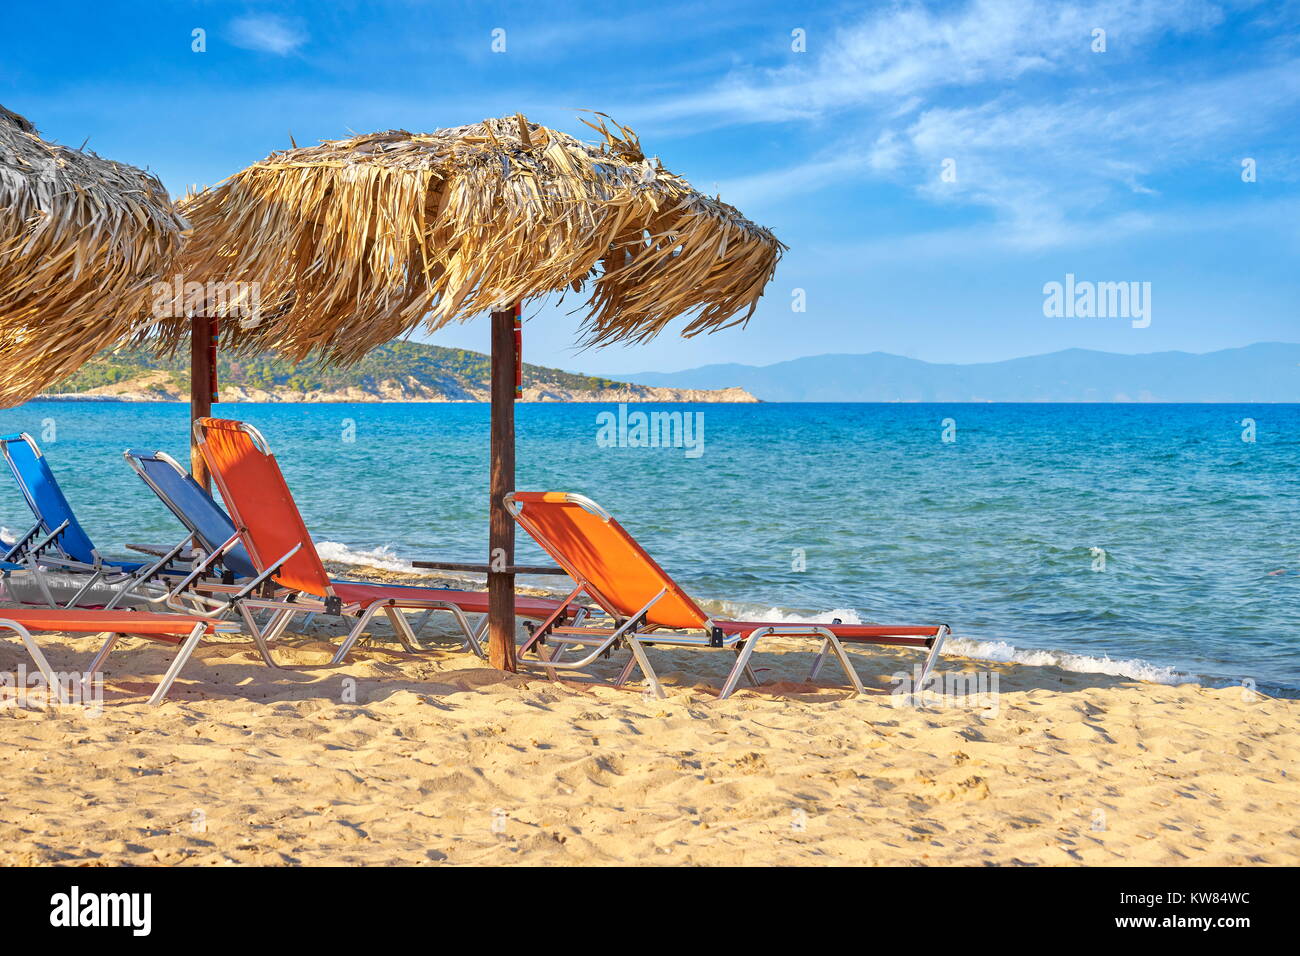 Sithonia beach, Halkidiki or Chalkidiki, Greece Stock Photo